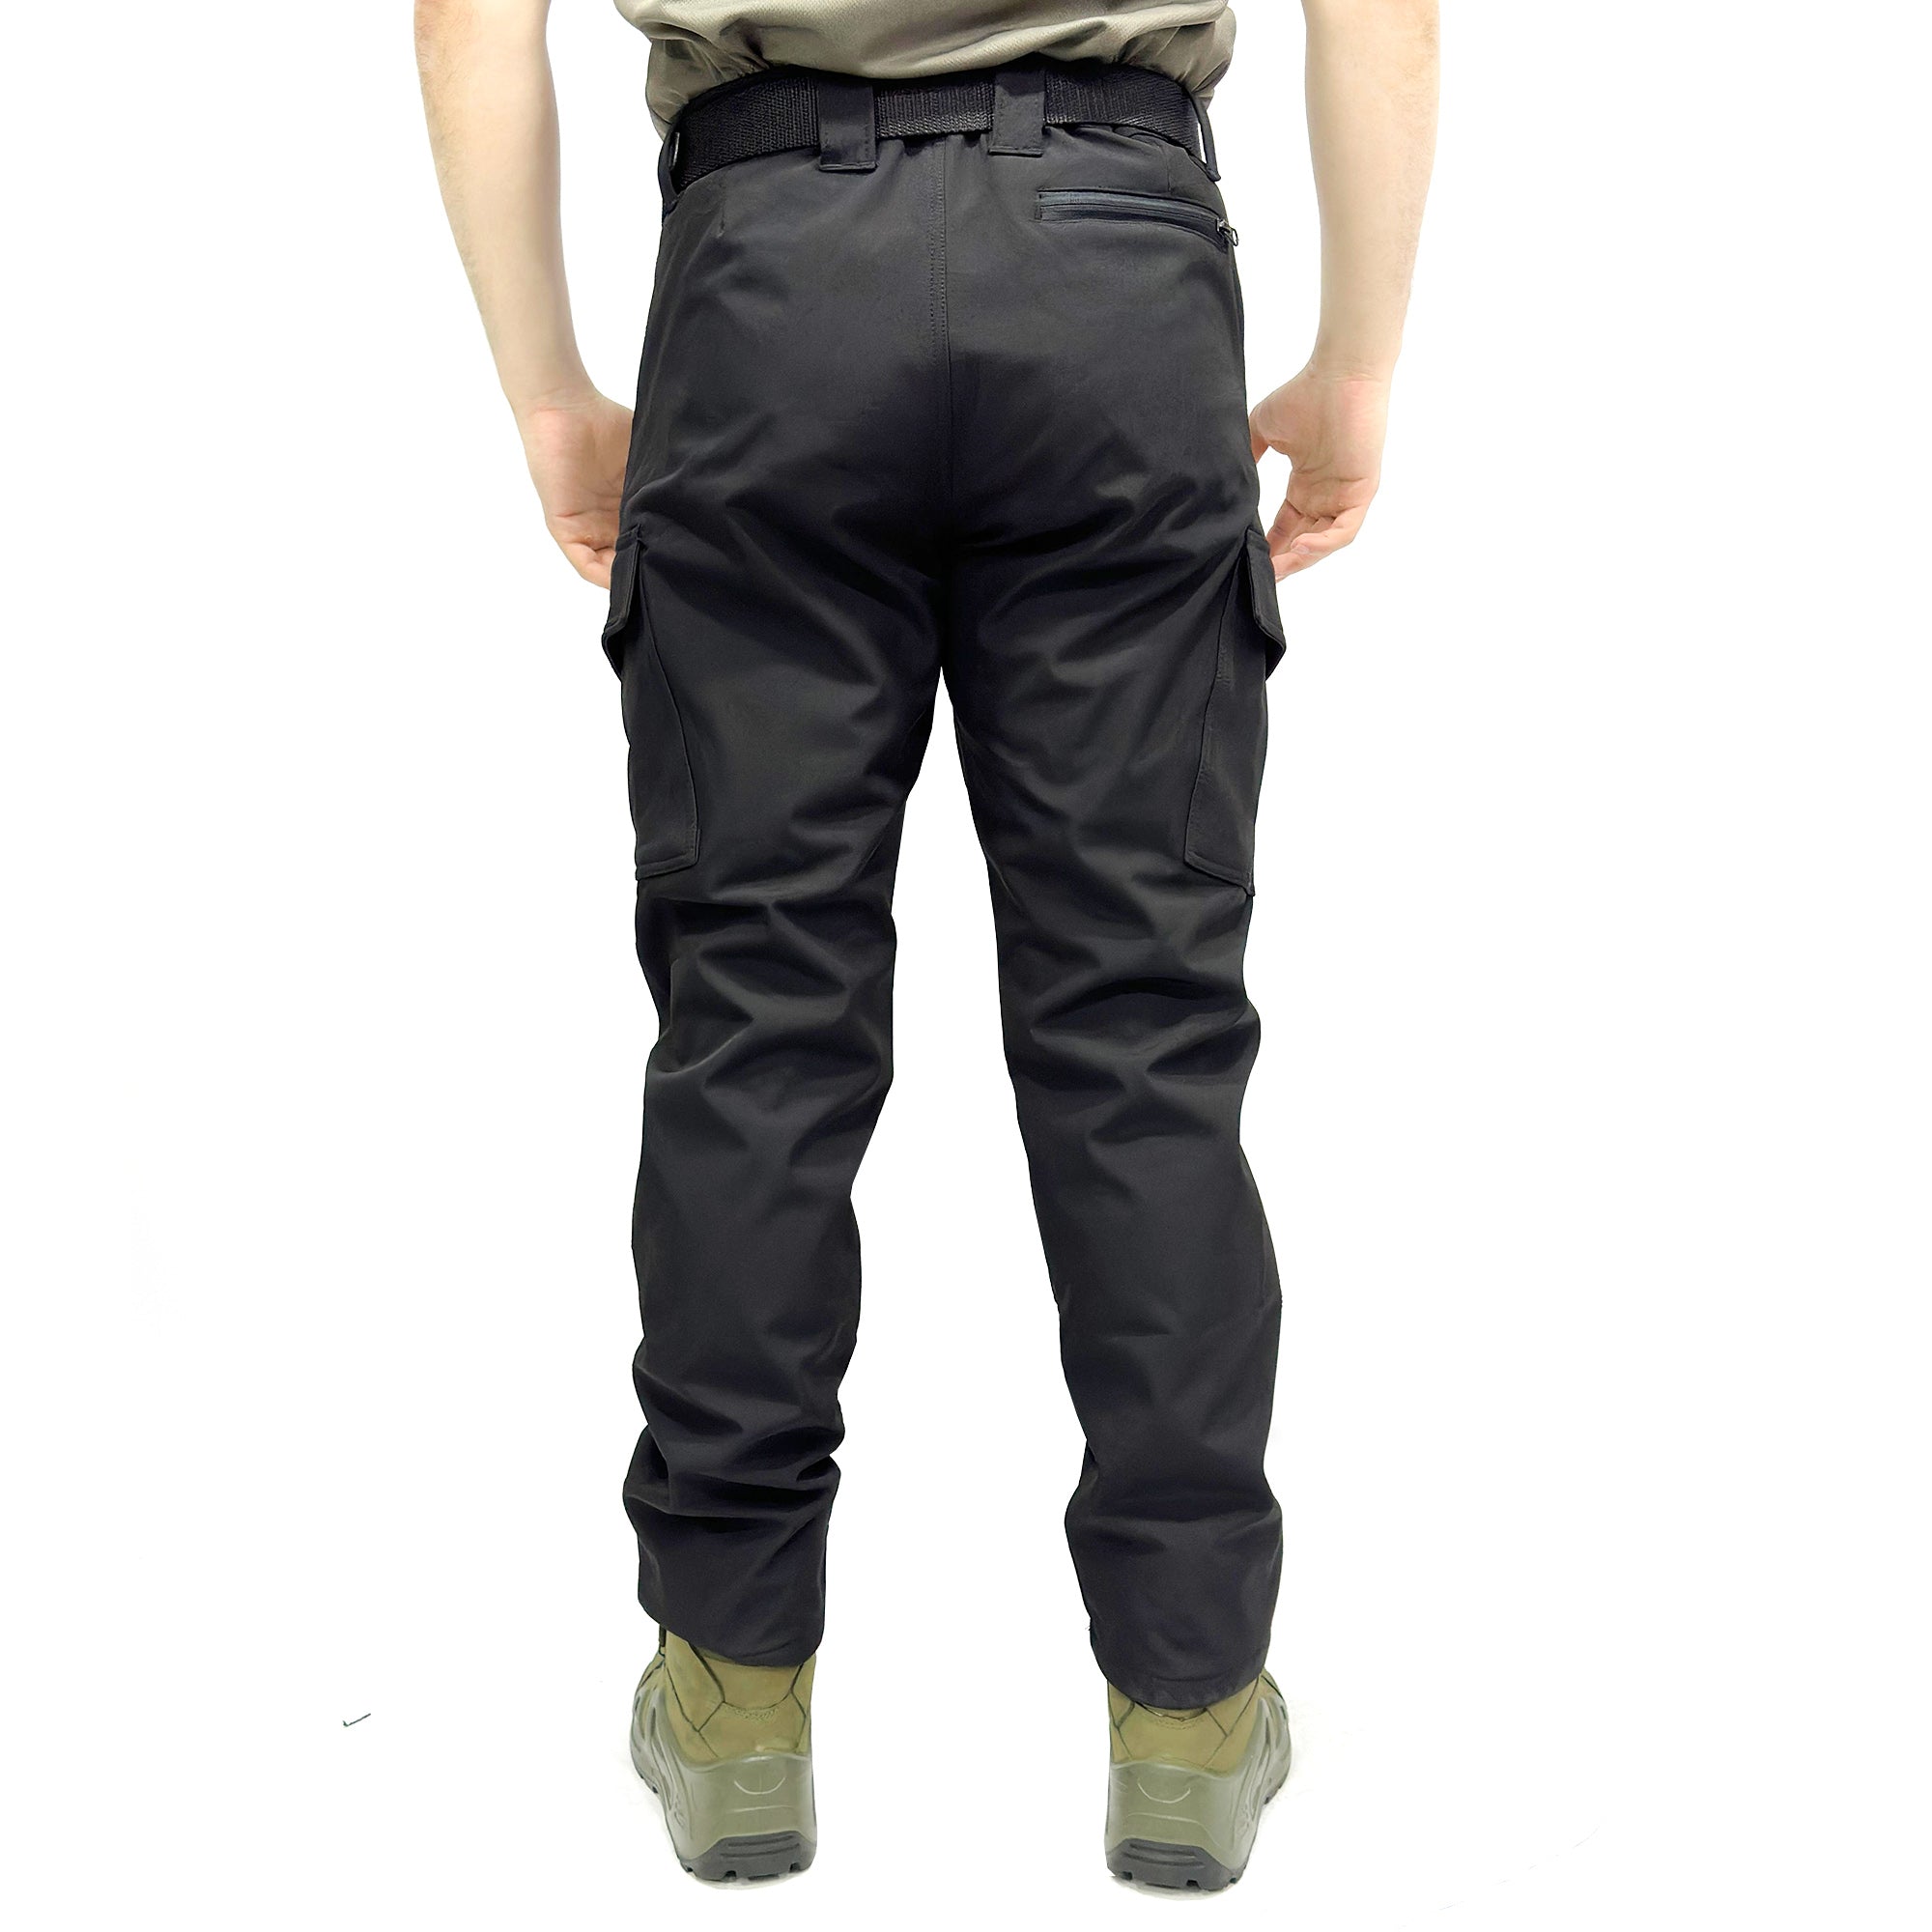 Wind-Waterproof Black Softshell Pants - Fleece Inside